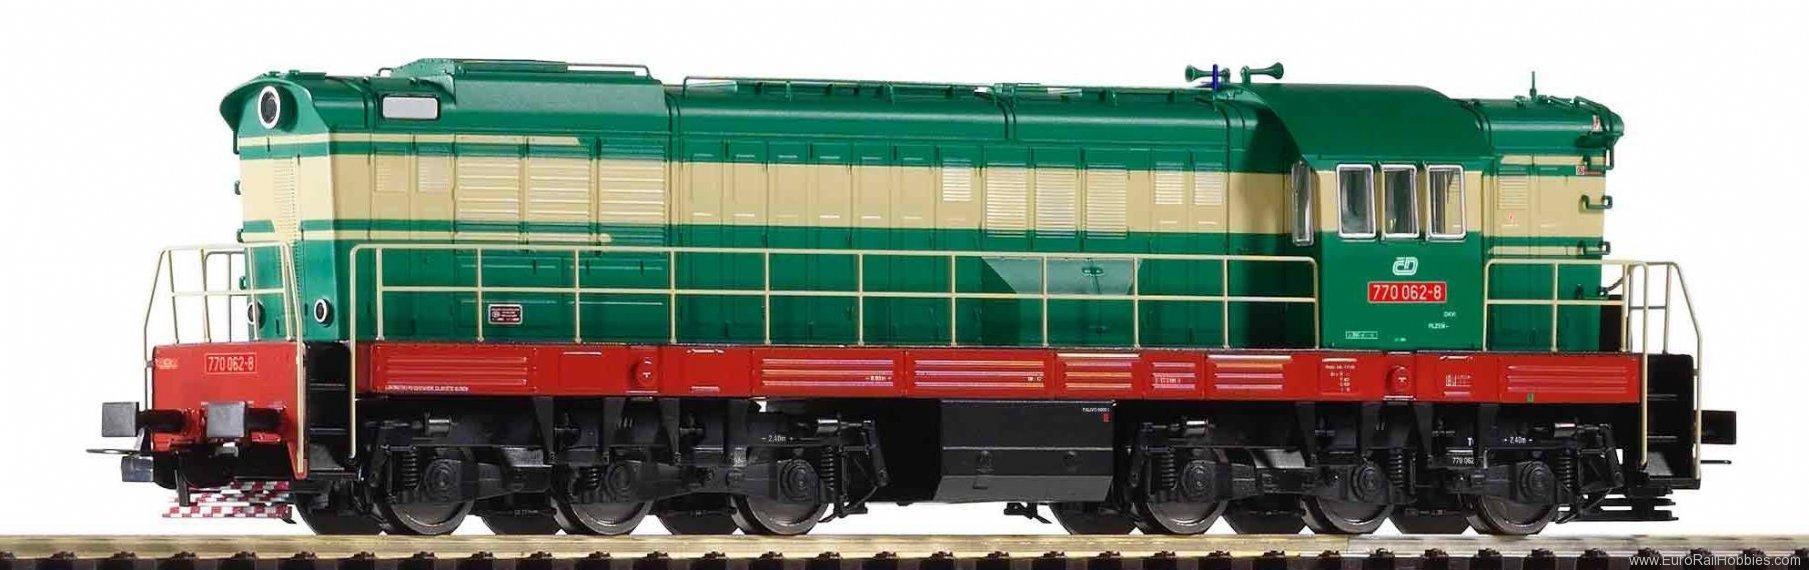 Piko 59793 Sound diesel locomotive BR 770 CD V, includin